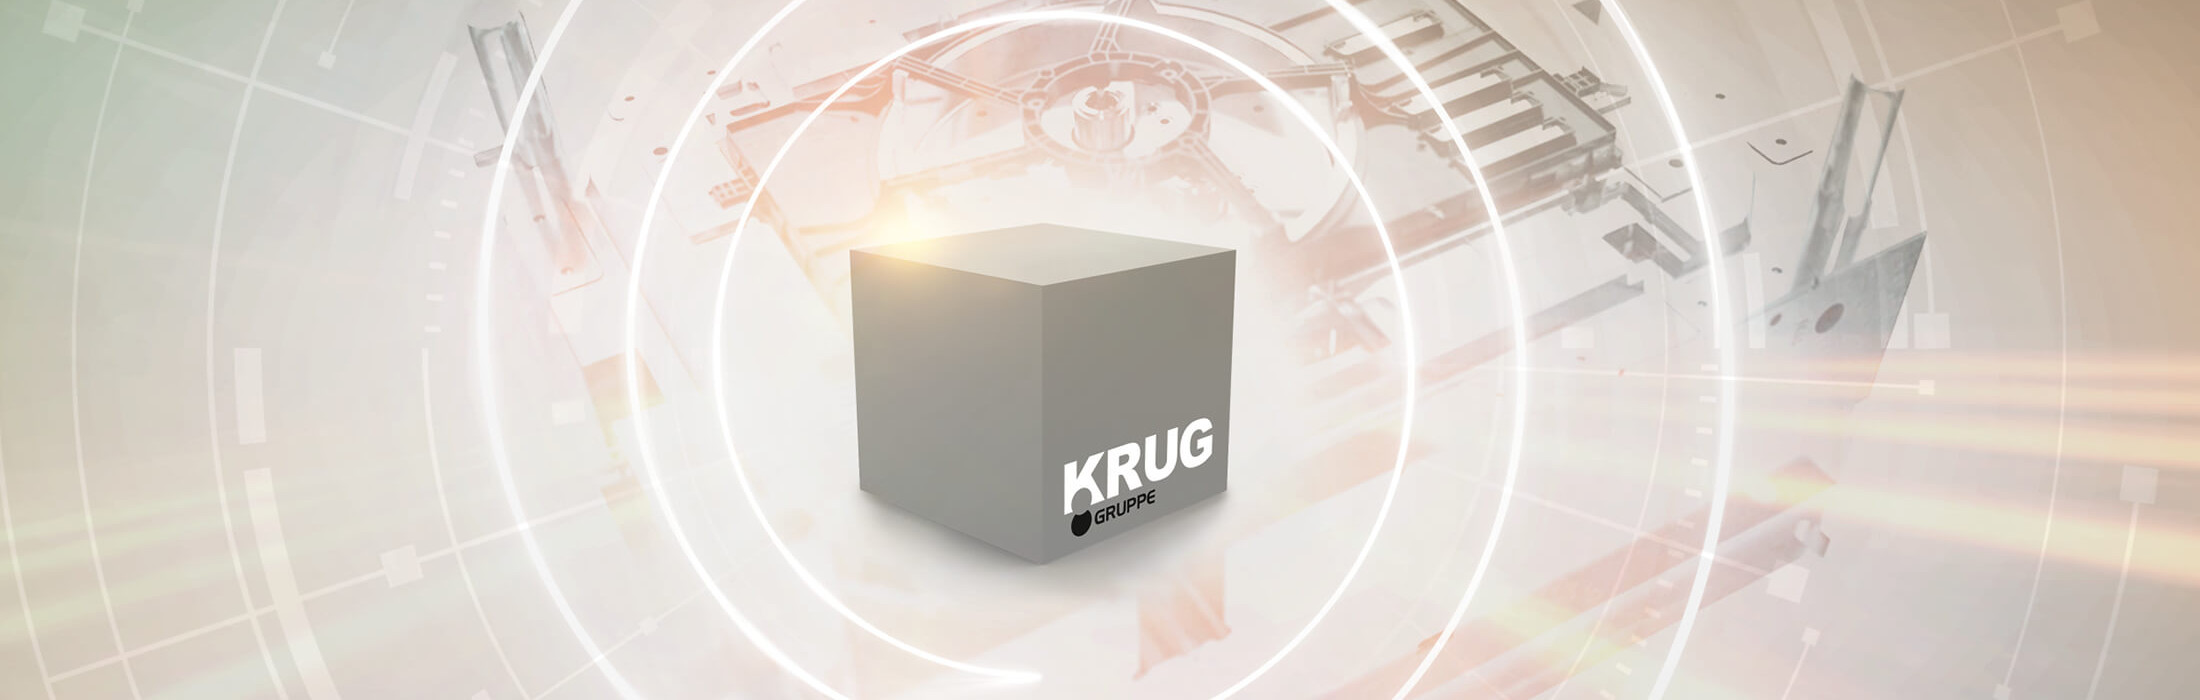 Das KRUG Logo auf einem Würfel, vor einem animierten Hintergrund, der eine Werkstückskizze zeigt.